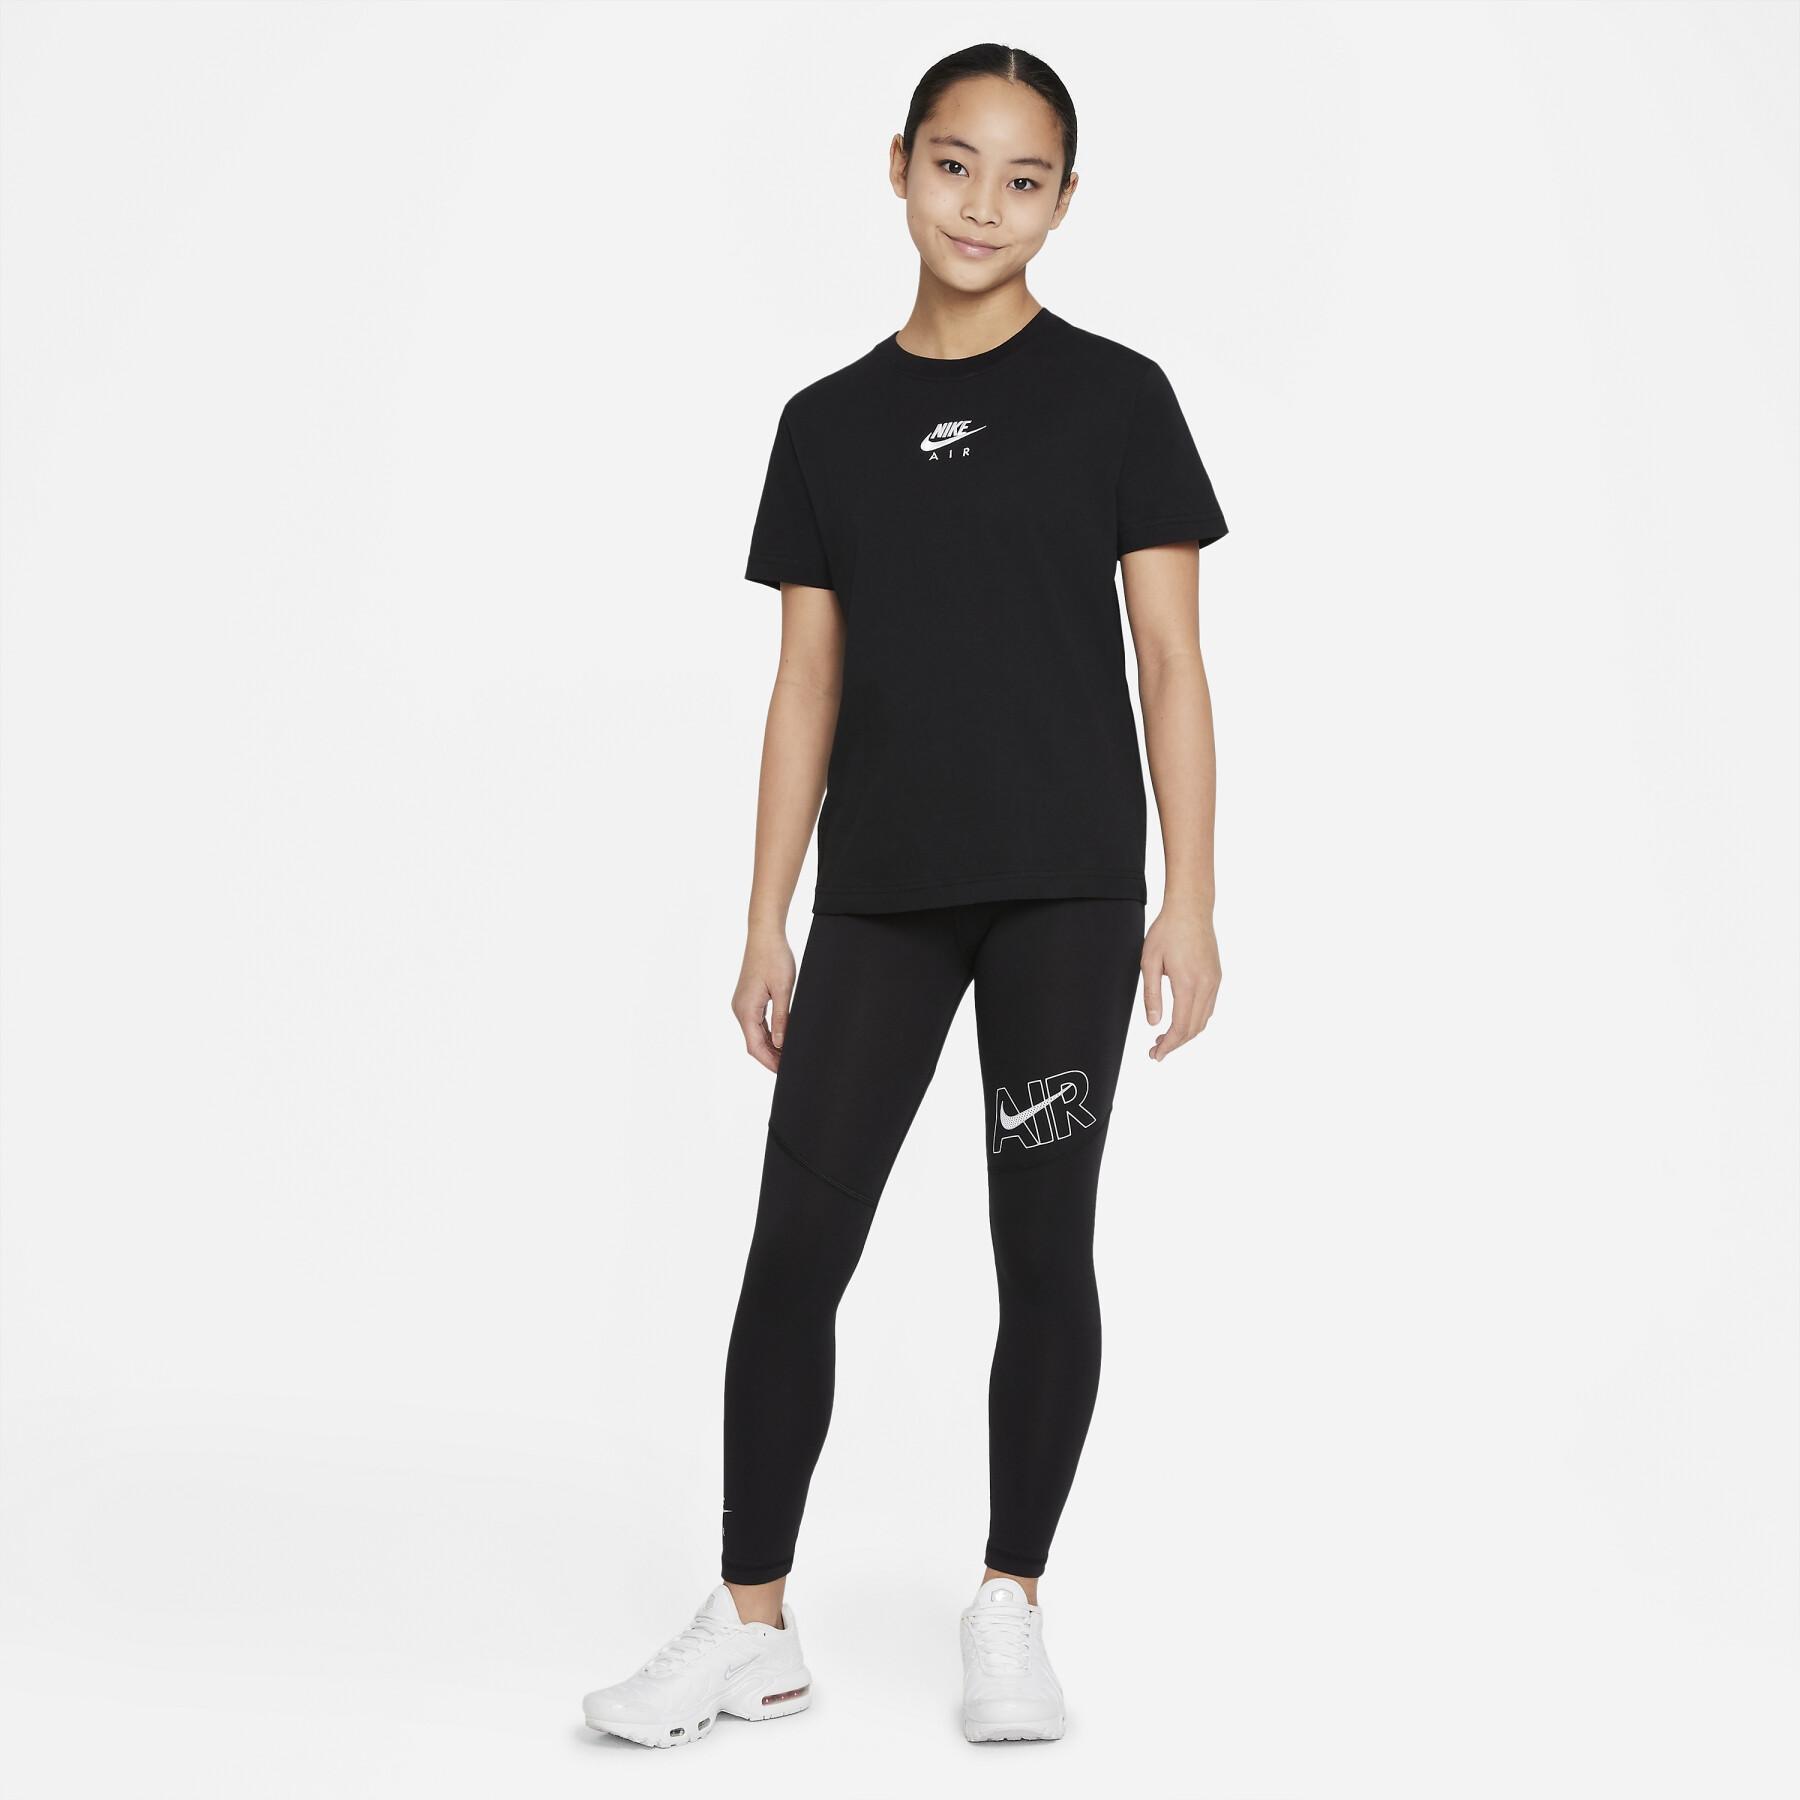 T-shirt fille Nike Air